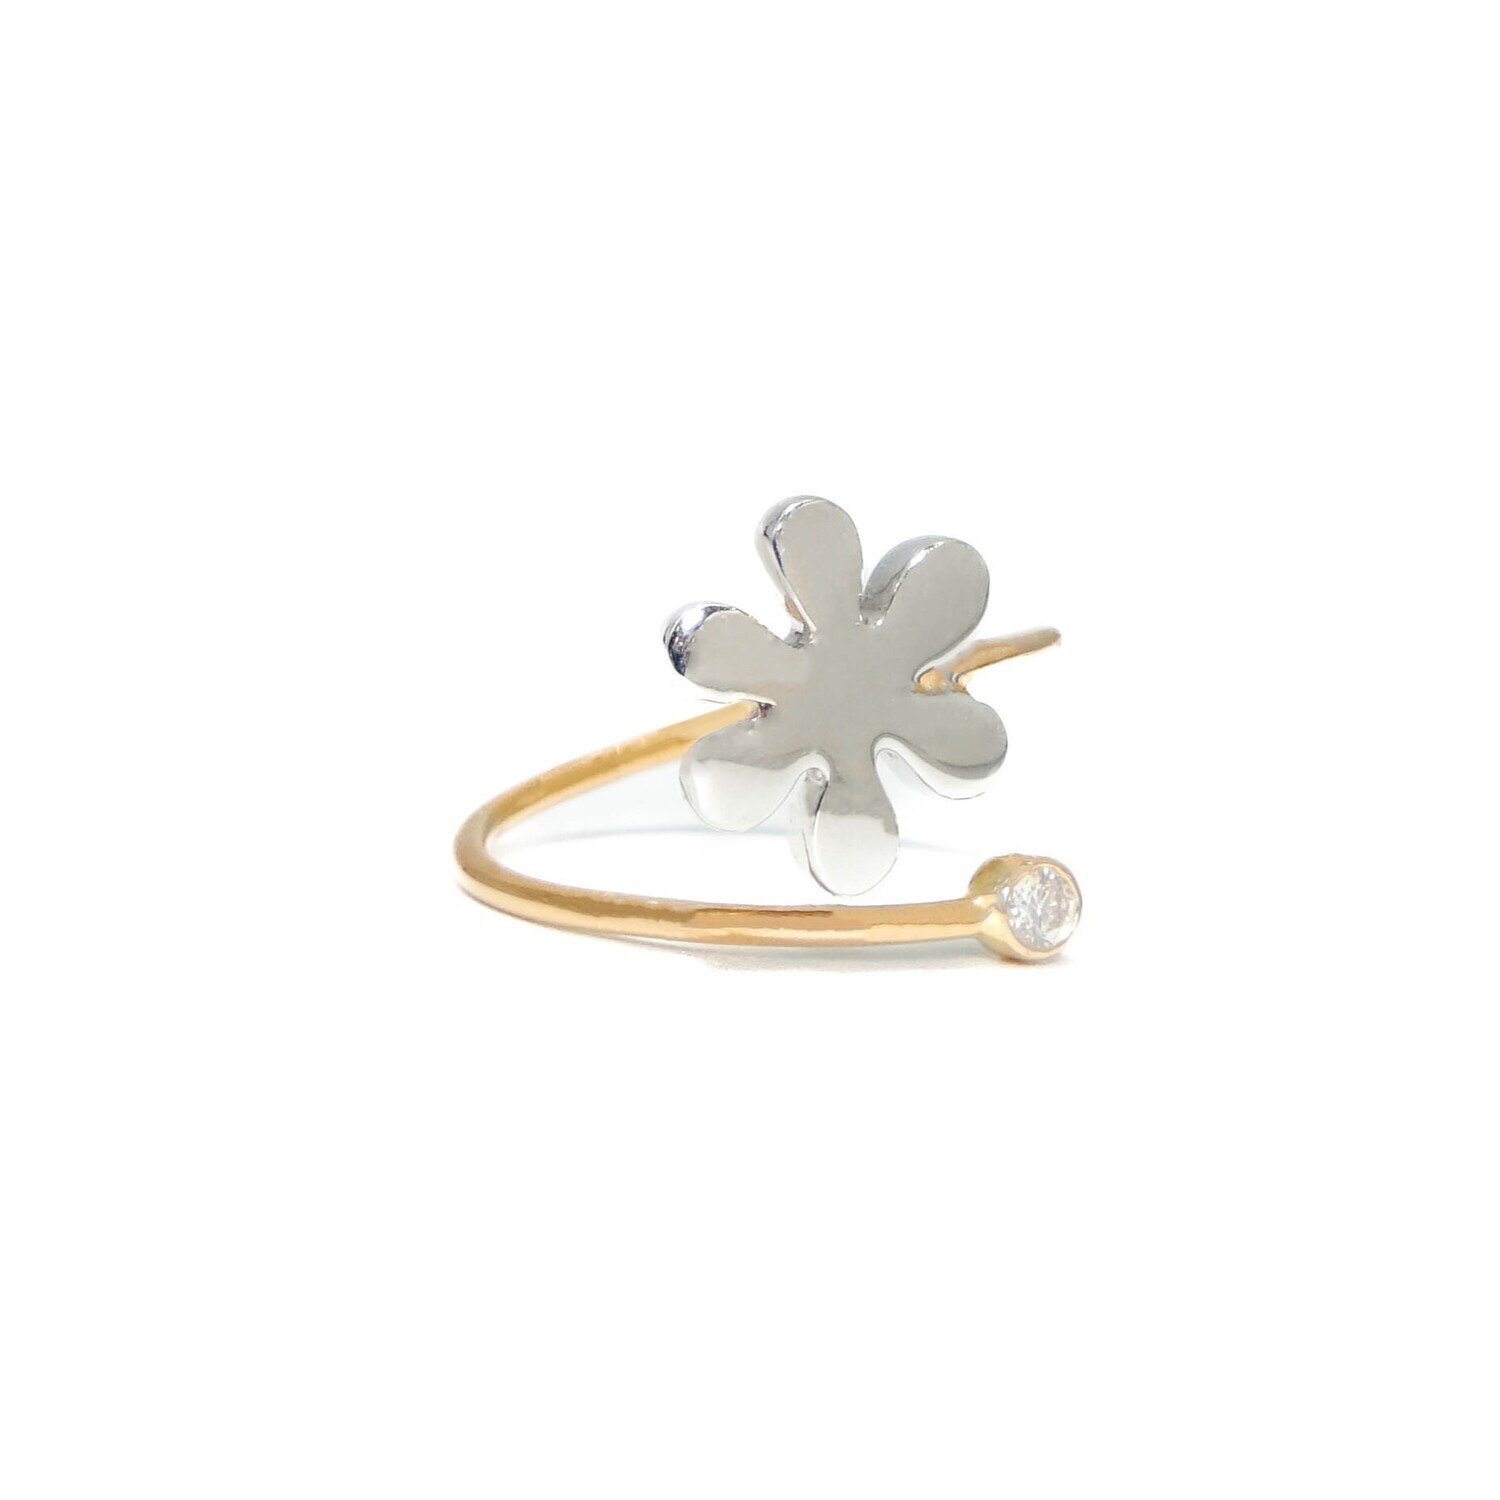 Flower adjustable ring